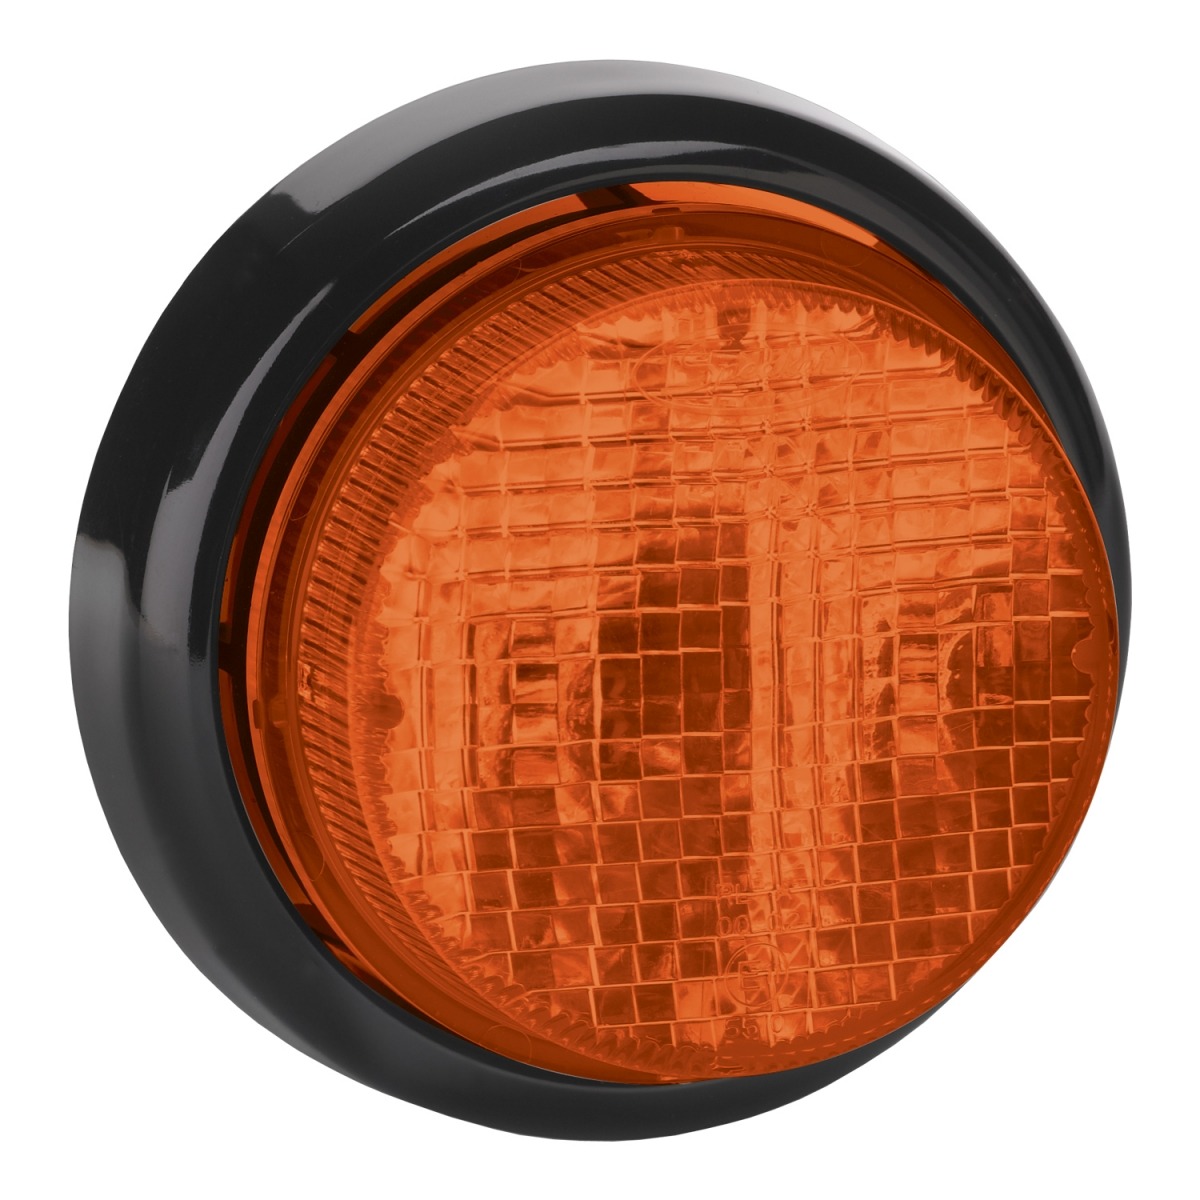 LED Signal Lights – Model 217